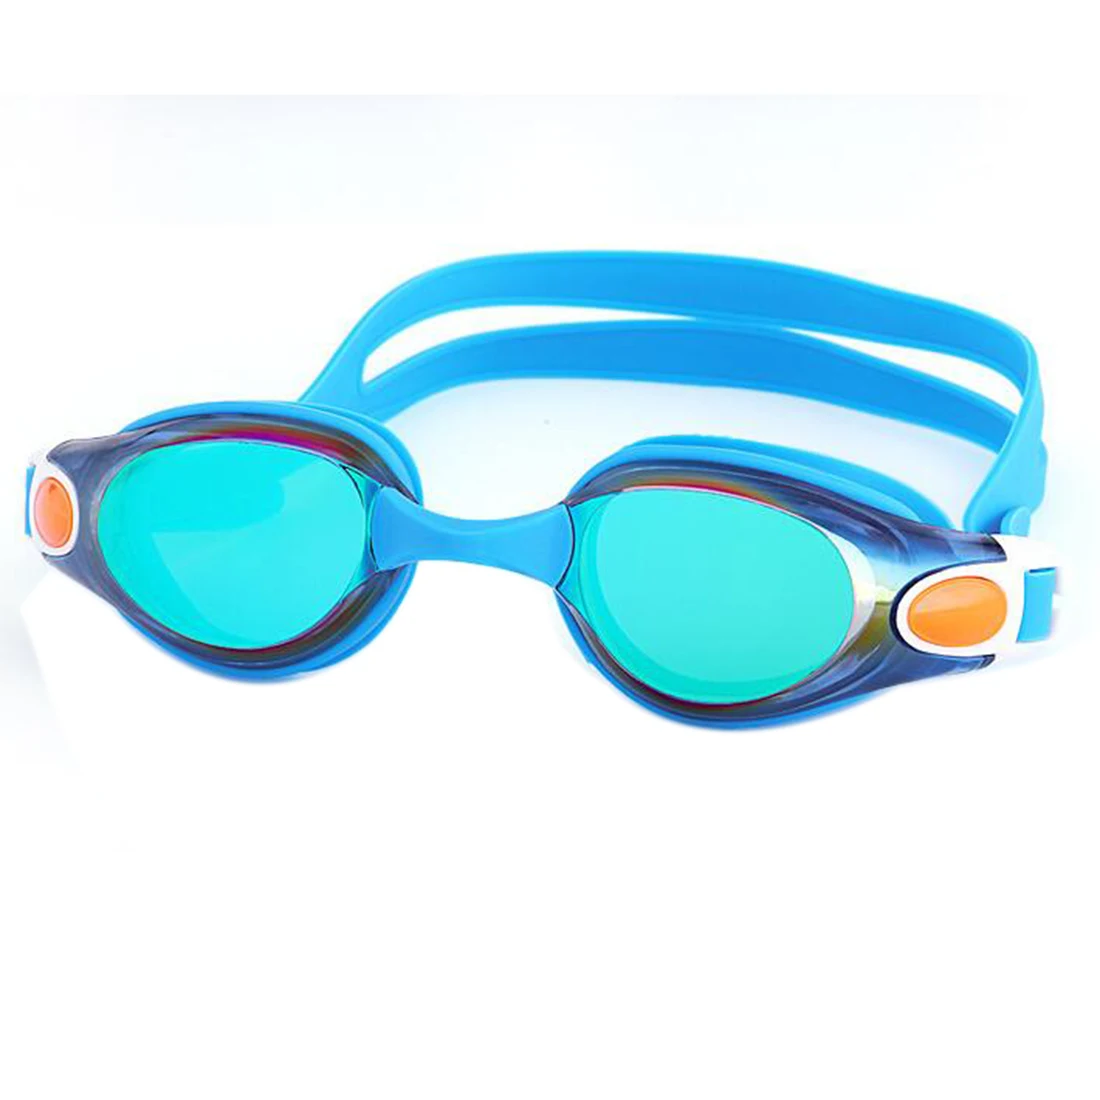 Водонепроницаемый Анти-туман УФ взрослых, профессиональные цветные линзы дайвинг очки для плавания оптика Плавание очки natacion Для женщин Для мужчин - Цвет: Royal Blue